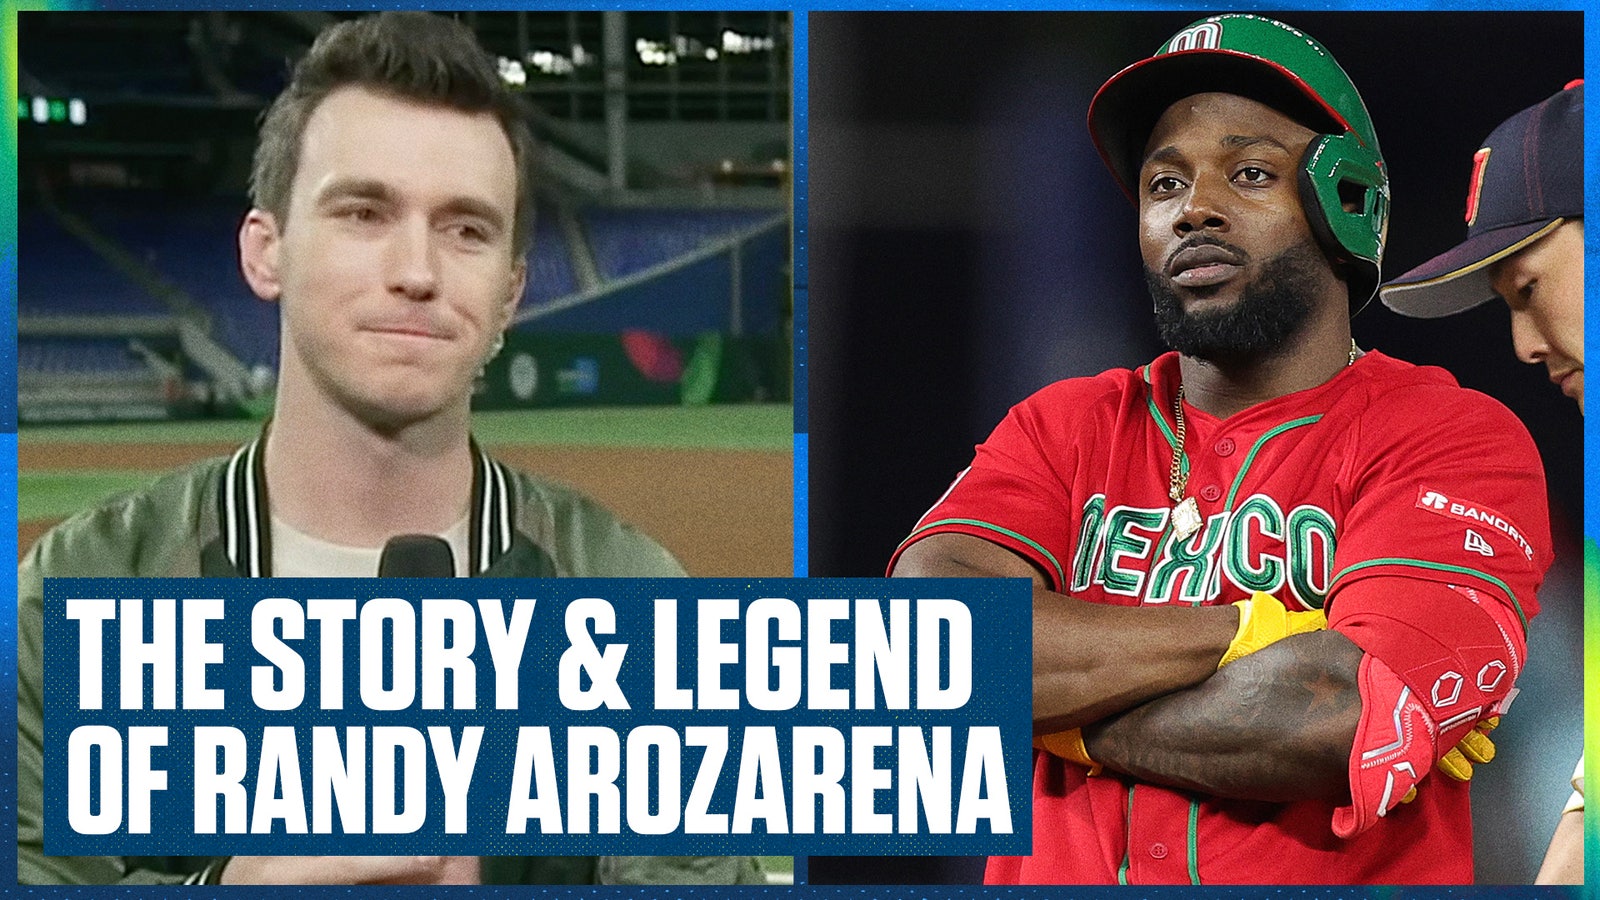 Fue el jugador del WBC Randy Arzarena, pero su historia es aún mejor